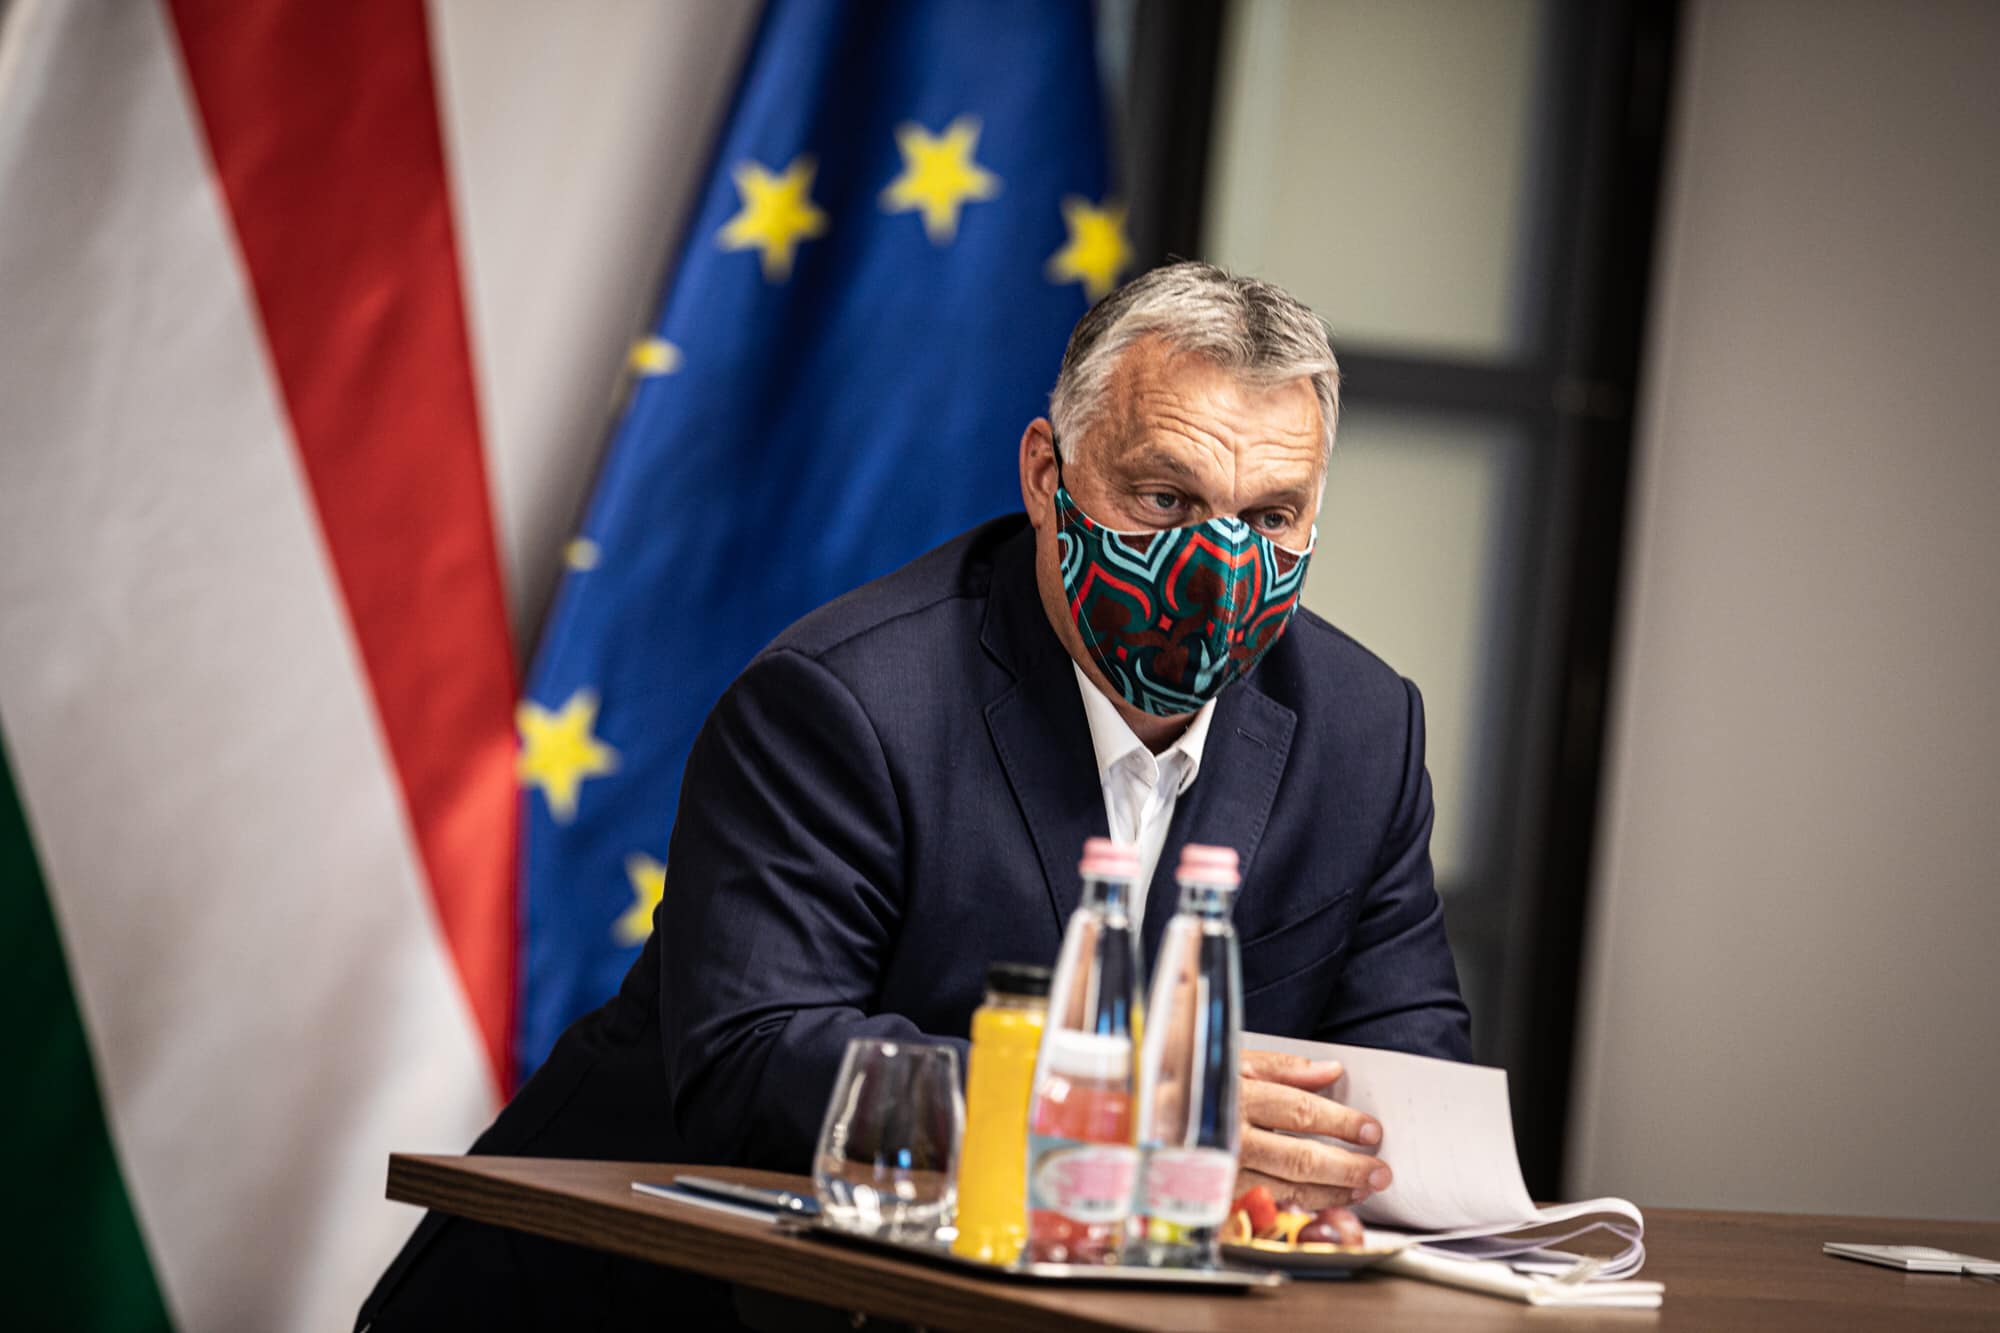 orbán in maschera